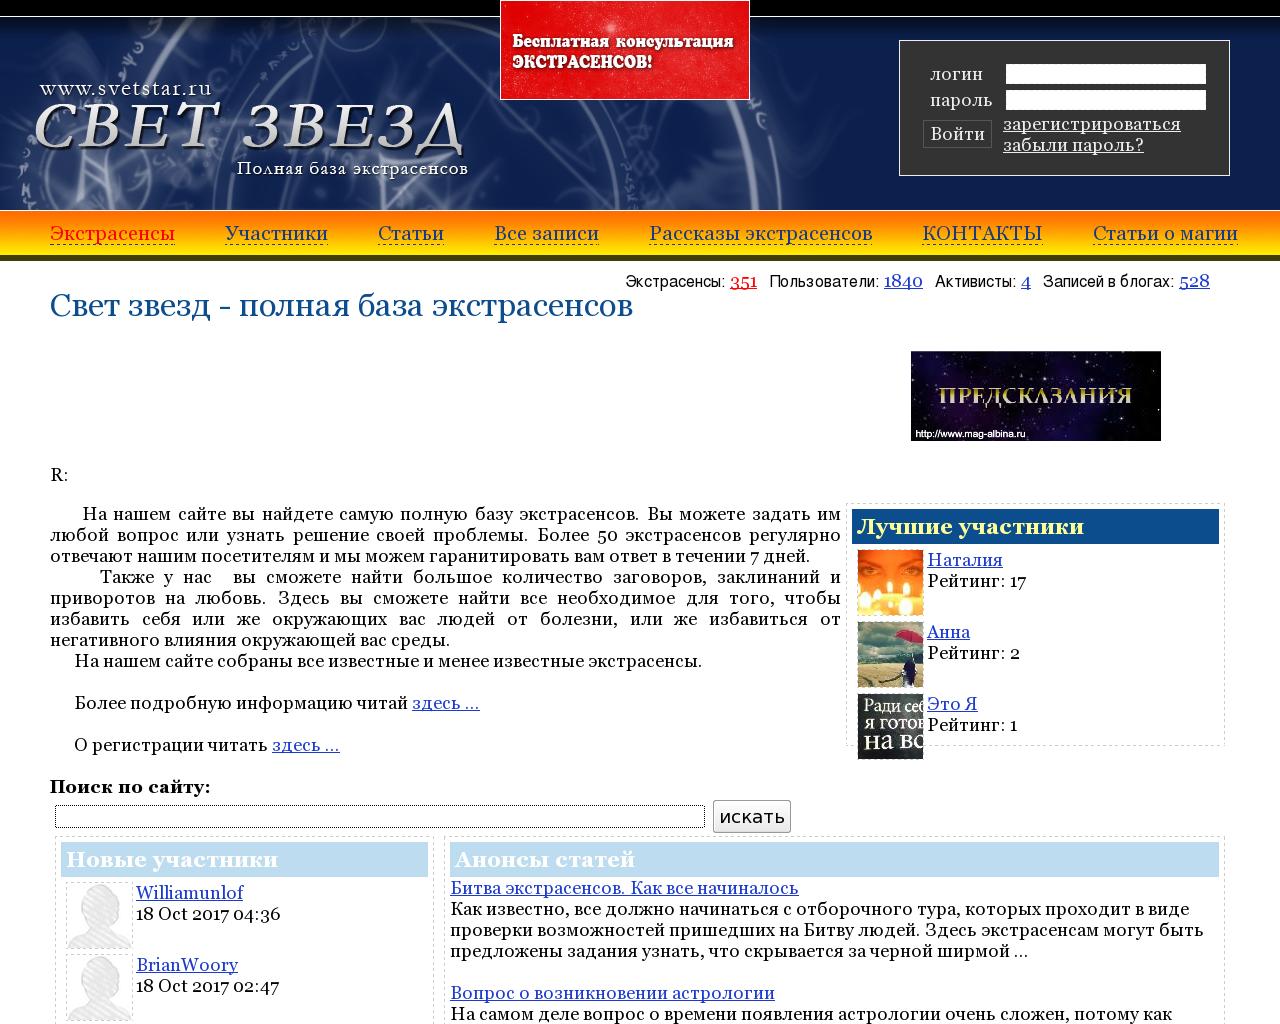 Изображение сайта svetstar.ru в разрешении 1280x1024